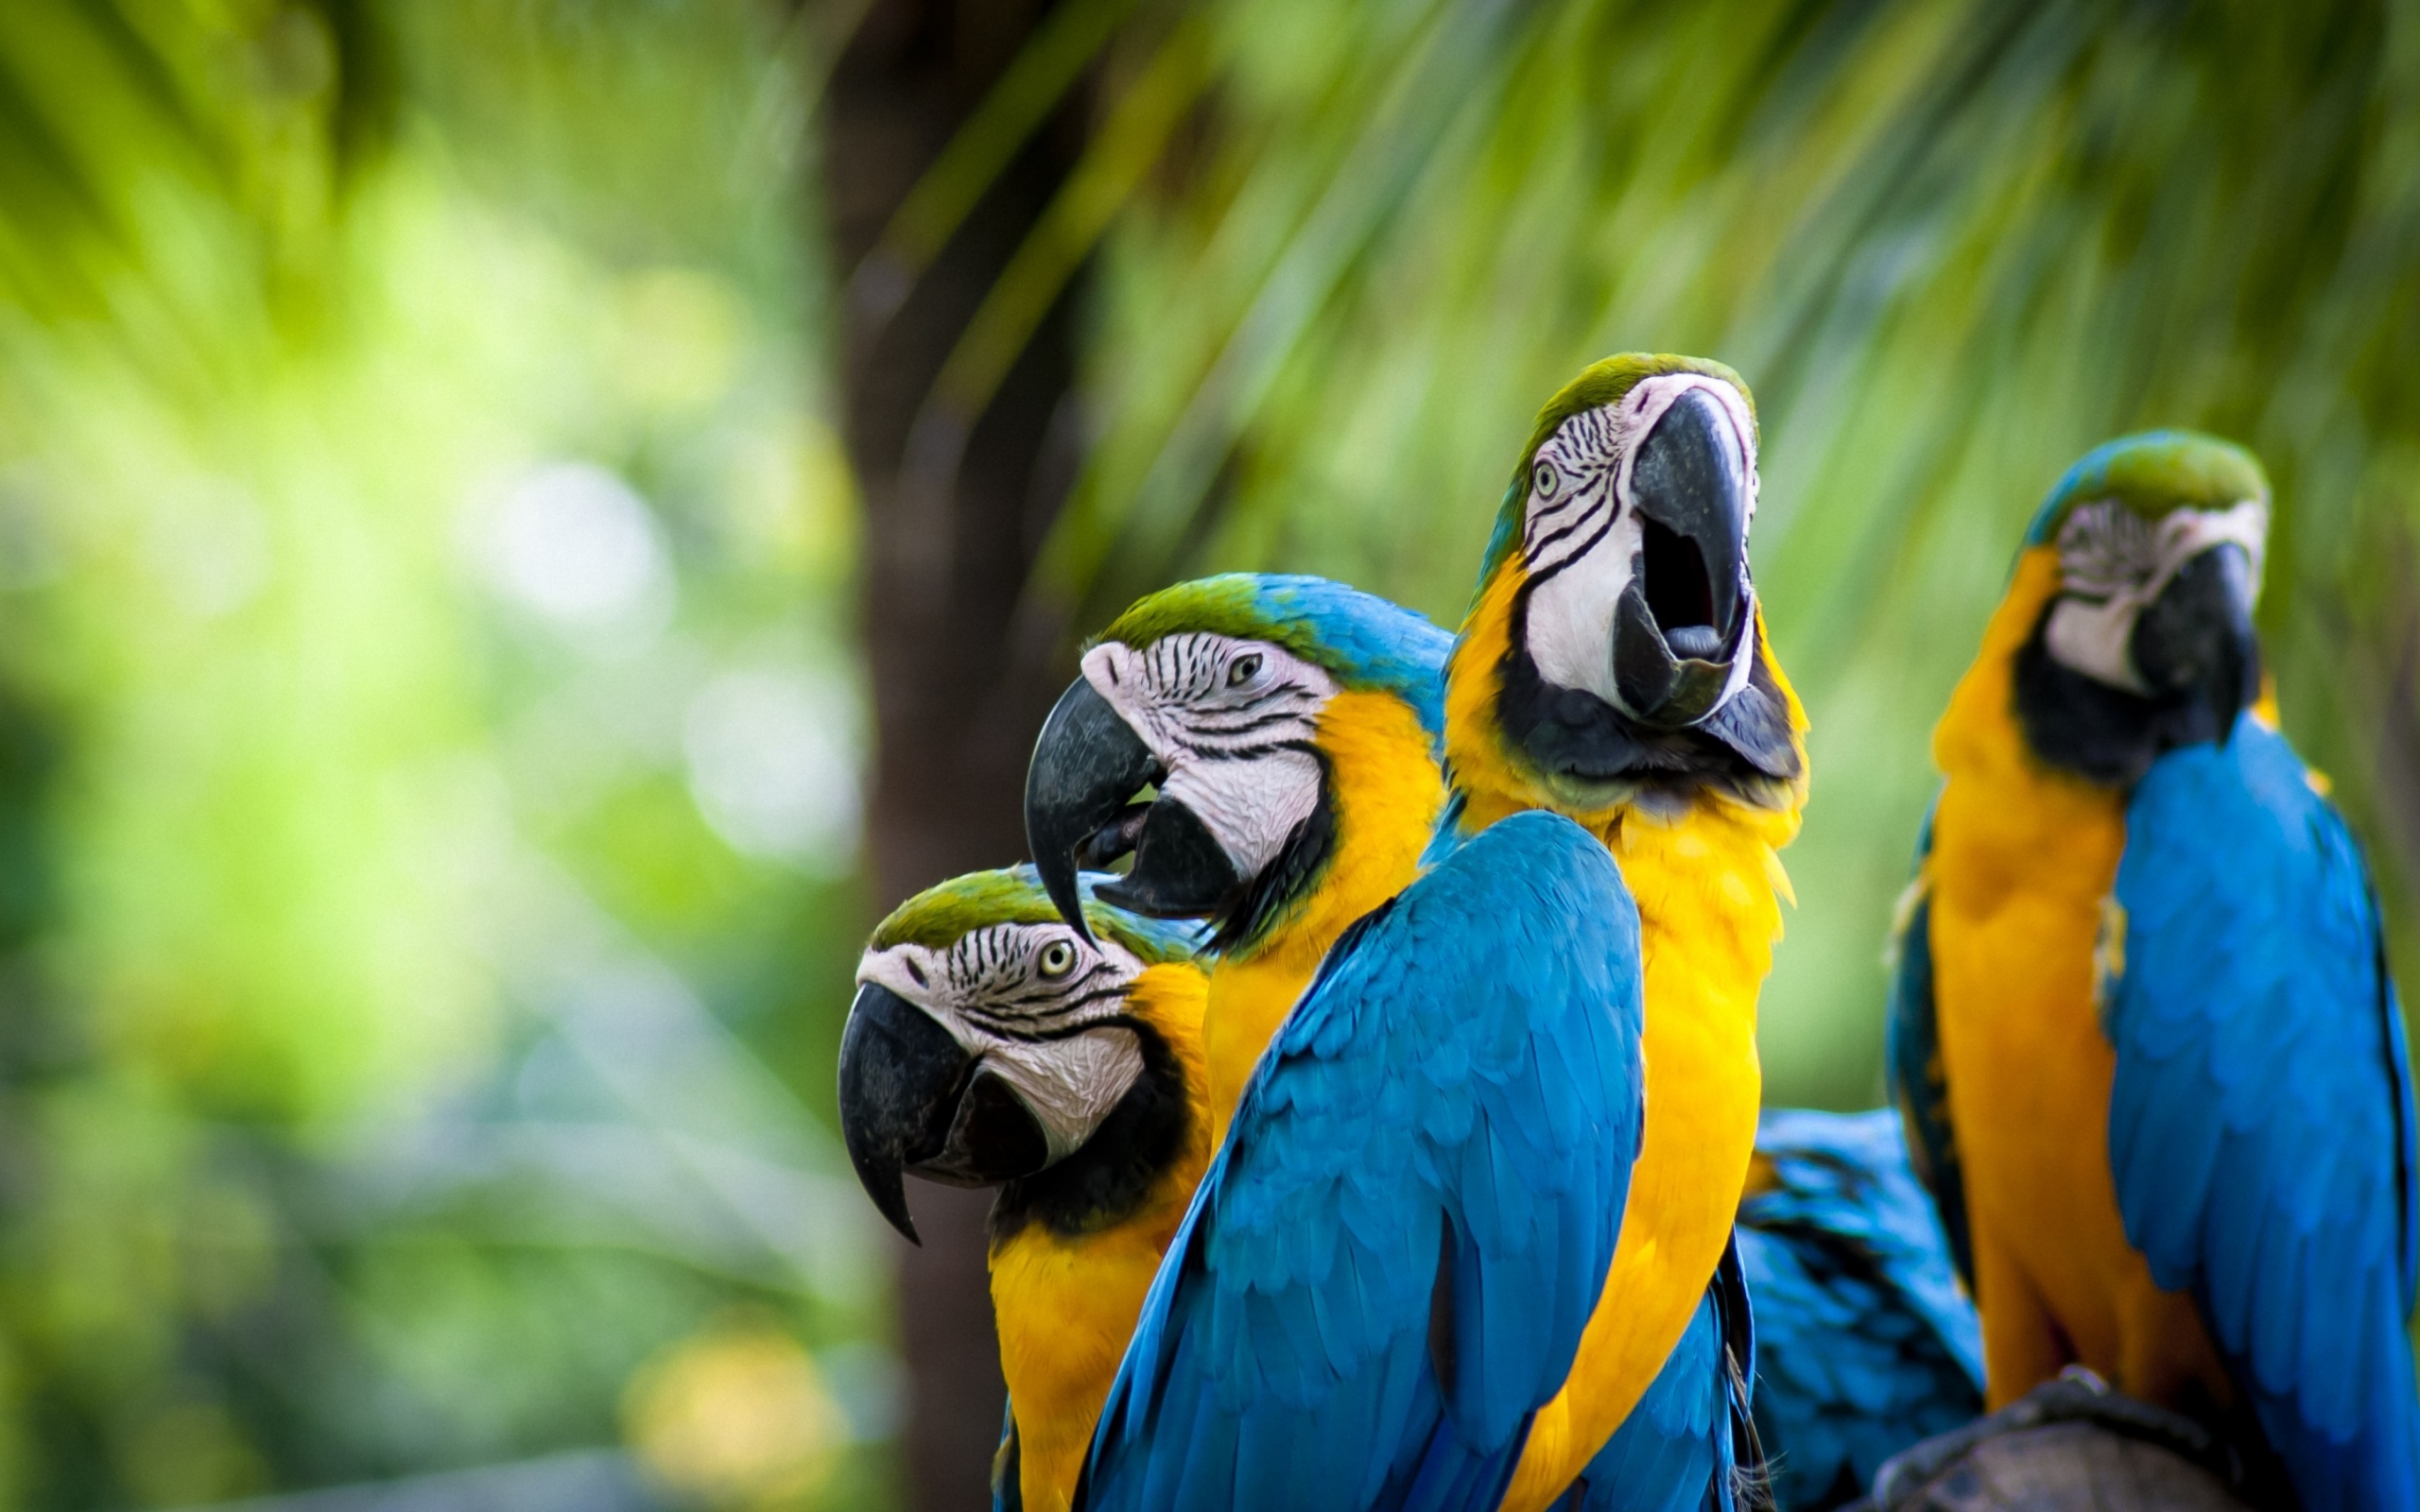 желто-голубые попугаи, ара, яркие птицы, размытость, фото, Yellow-blue parrots, macaw, bright birds, blur, photo